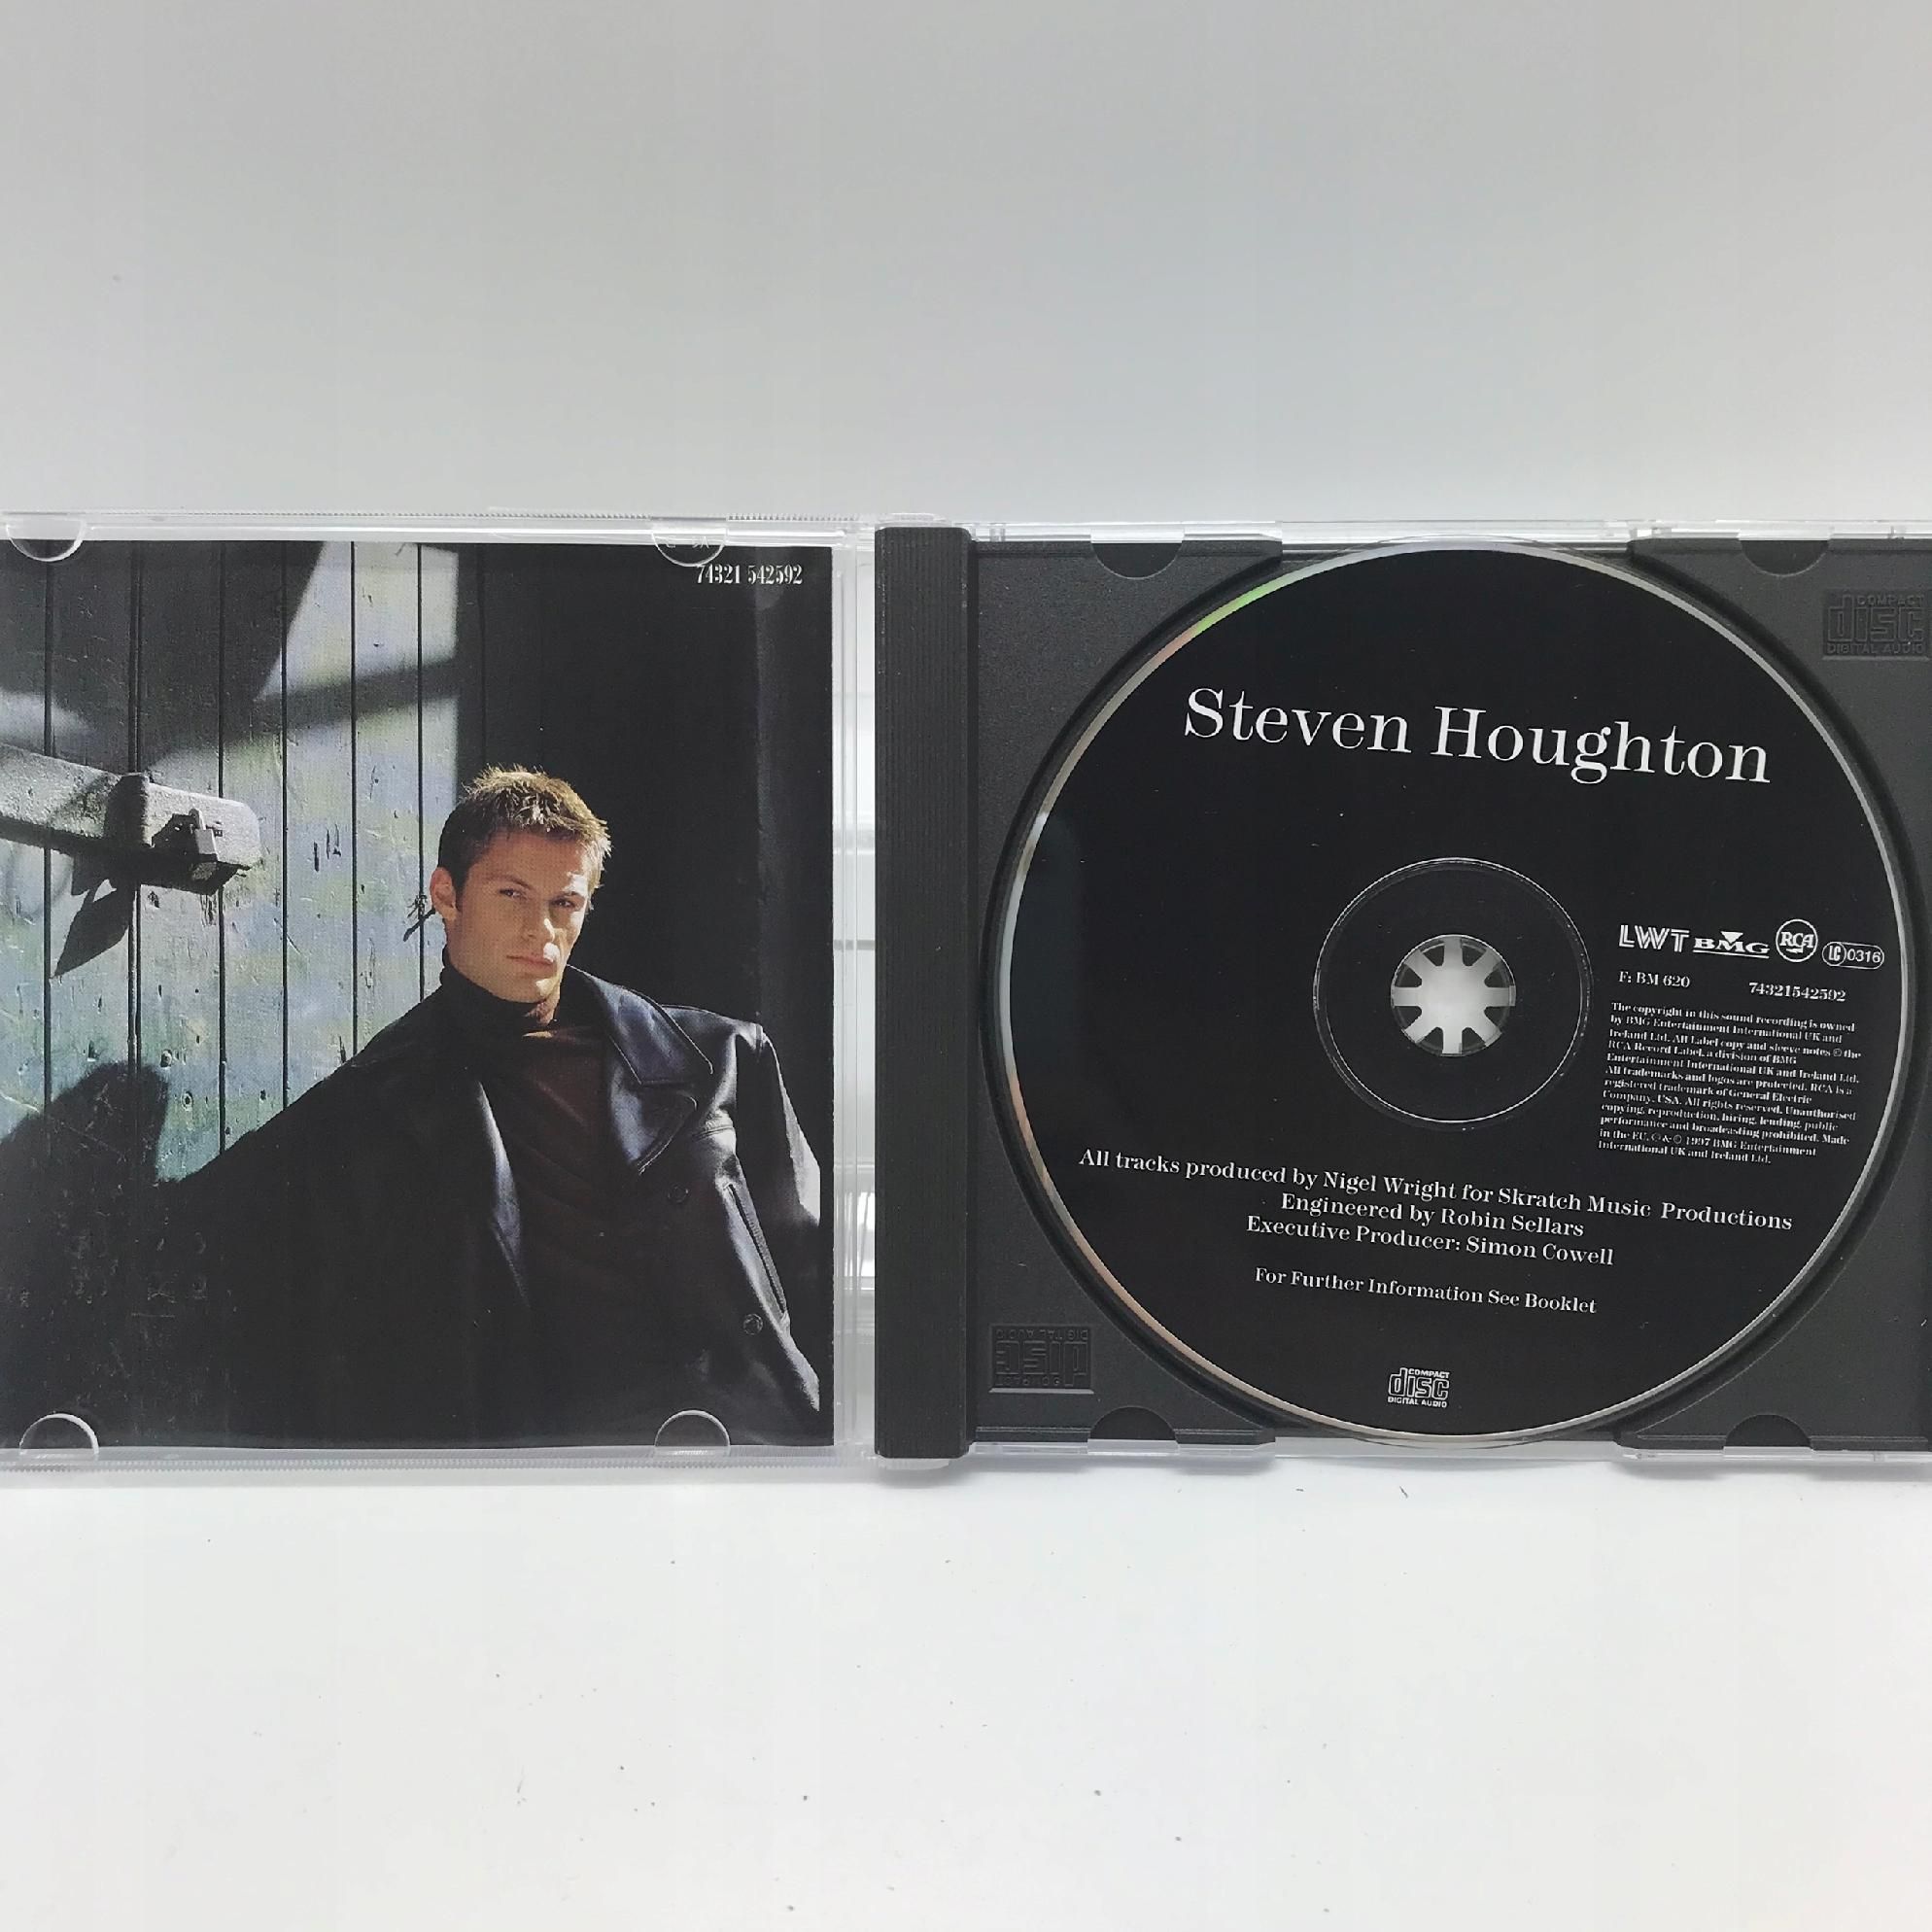 Cd - Steven Houghton - Steven Houghton Pop 1997